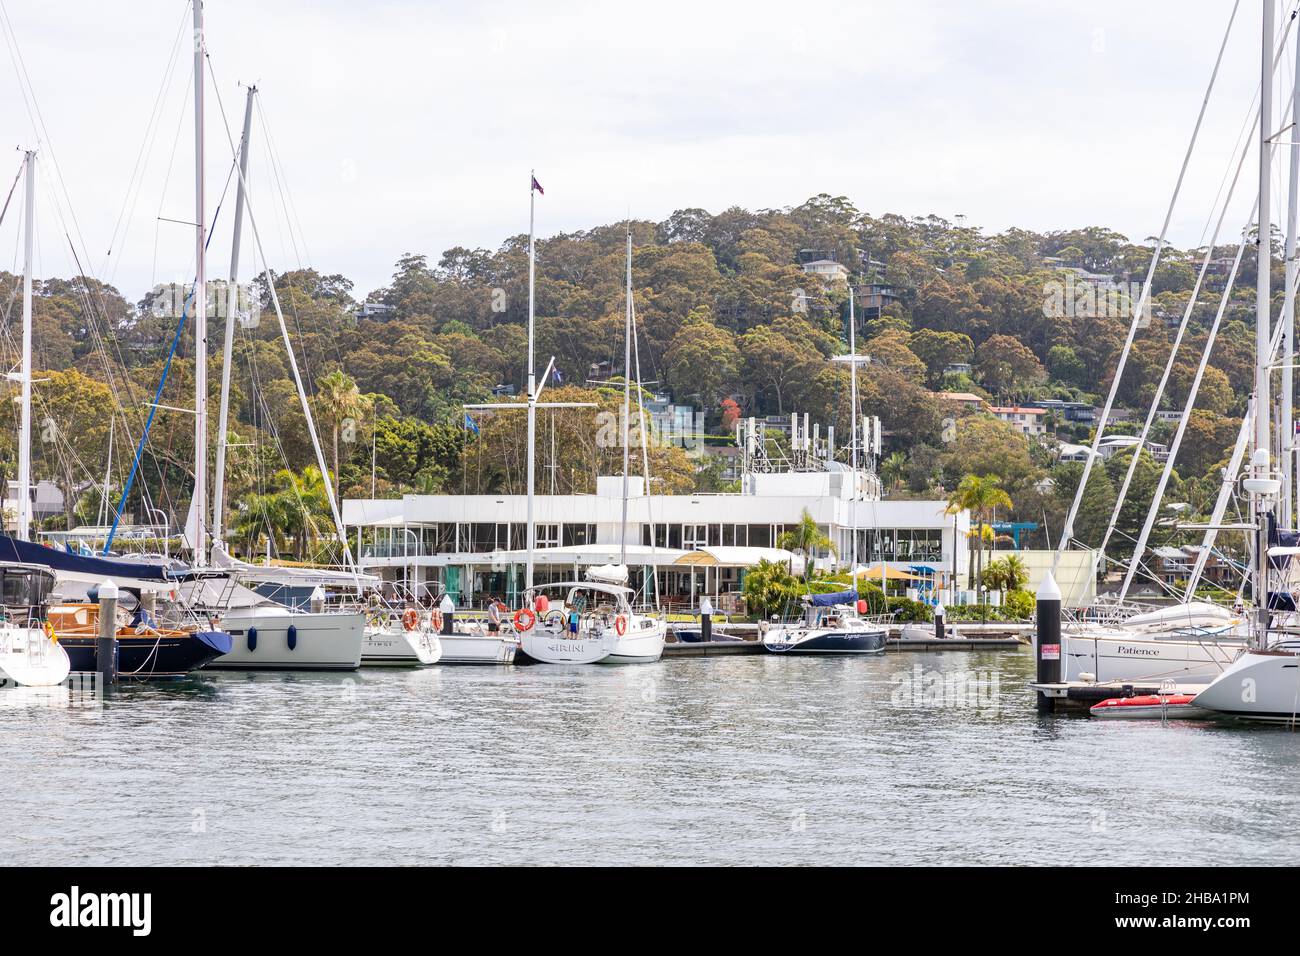 Royal Prince Alfred Yacht Club visto dall'acqua su Pittwater, con barche e yacht nel porto turistico, Sydney, Australia Foto Stock